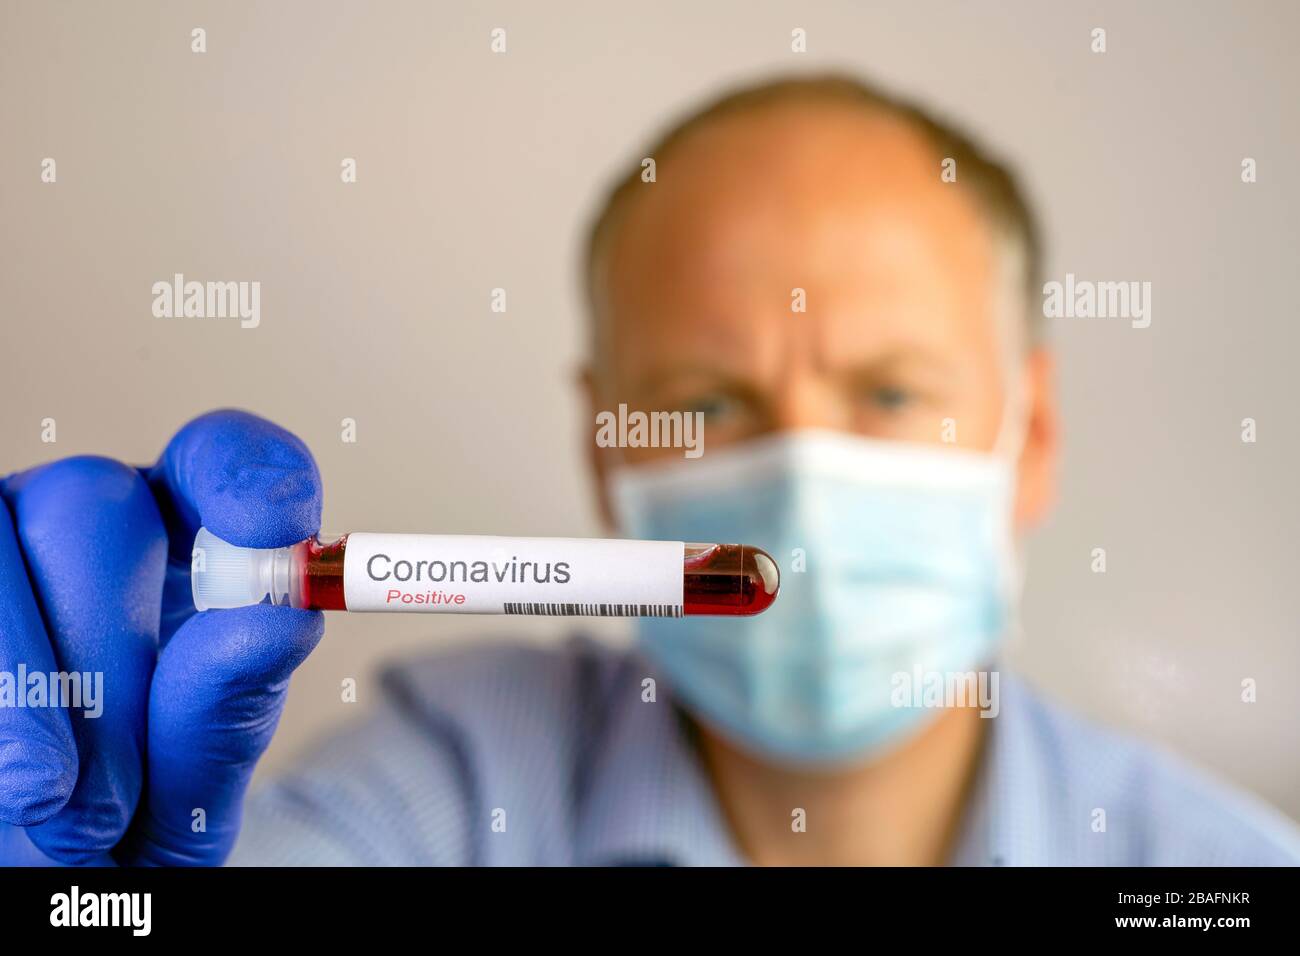 Ein ernsthafter Mann, der eine Schutzmaske trägt und ein positives Ergebnis seines Coronavirus Tests zeigt. Stockfoto